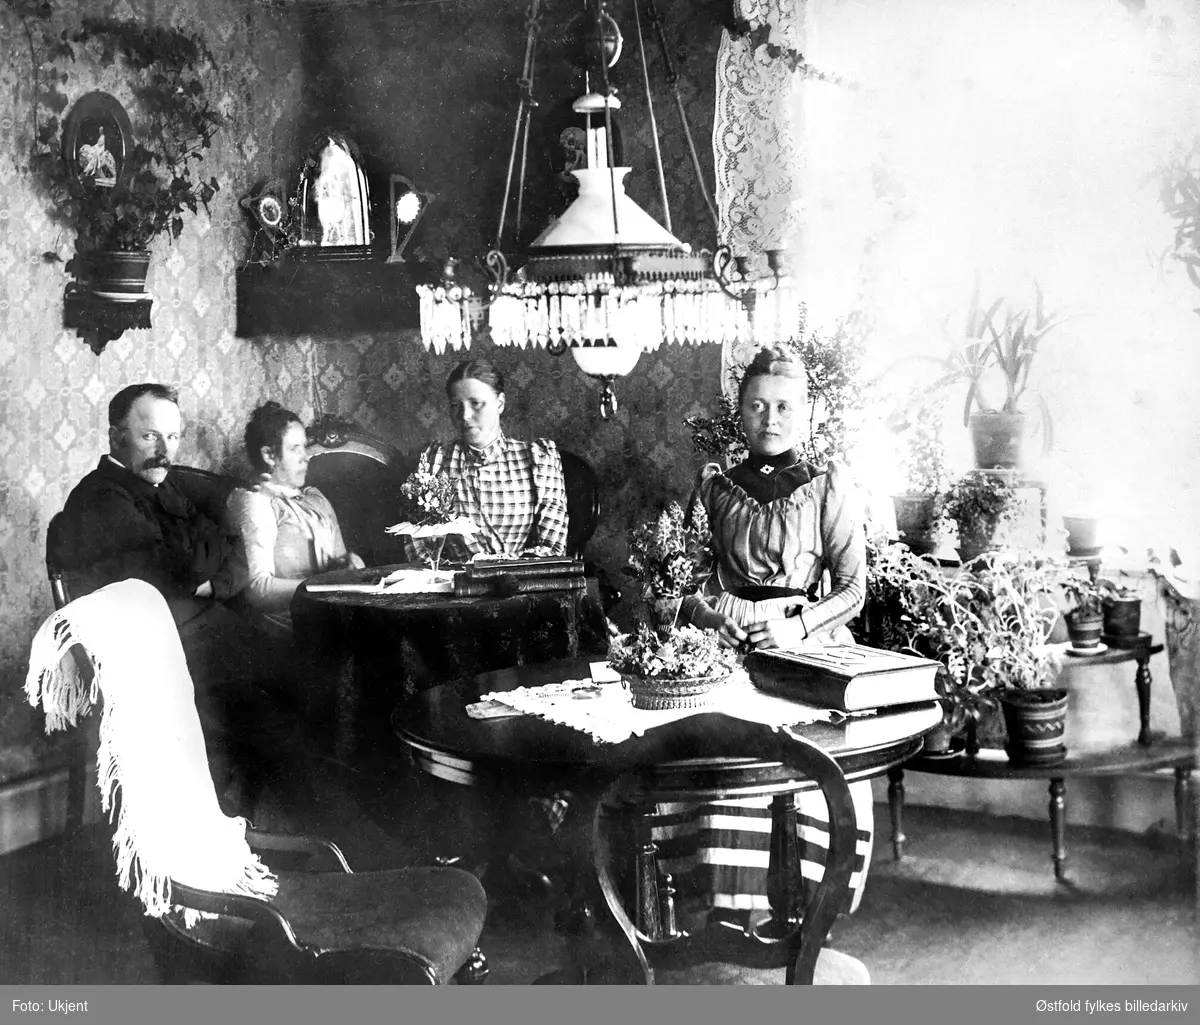 Stueinteriør fra hjem på Larkollen i Rygge 1892. Hjemmet til Carl E. Iversøn.
Fra venstre: 
Carl Emerntius Johannesen Iversøn (1838-1930) (dampskipsfører), kona Hedvig Jacoba Iversøn (1852-1935), Dikka Abel, Karen Bredal. 
Ifølge folketelling 1910 for Rygge var Carl og Hedvig bosatt på Fagerheim, Larkollen i Rygge.